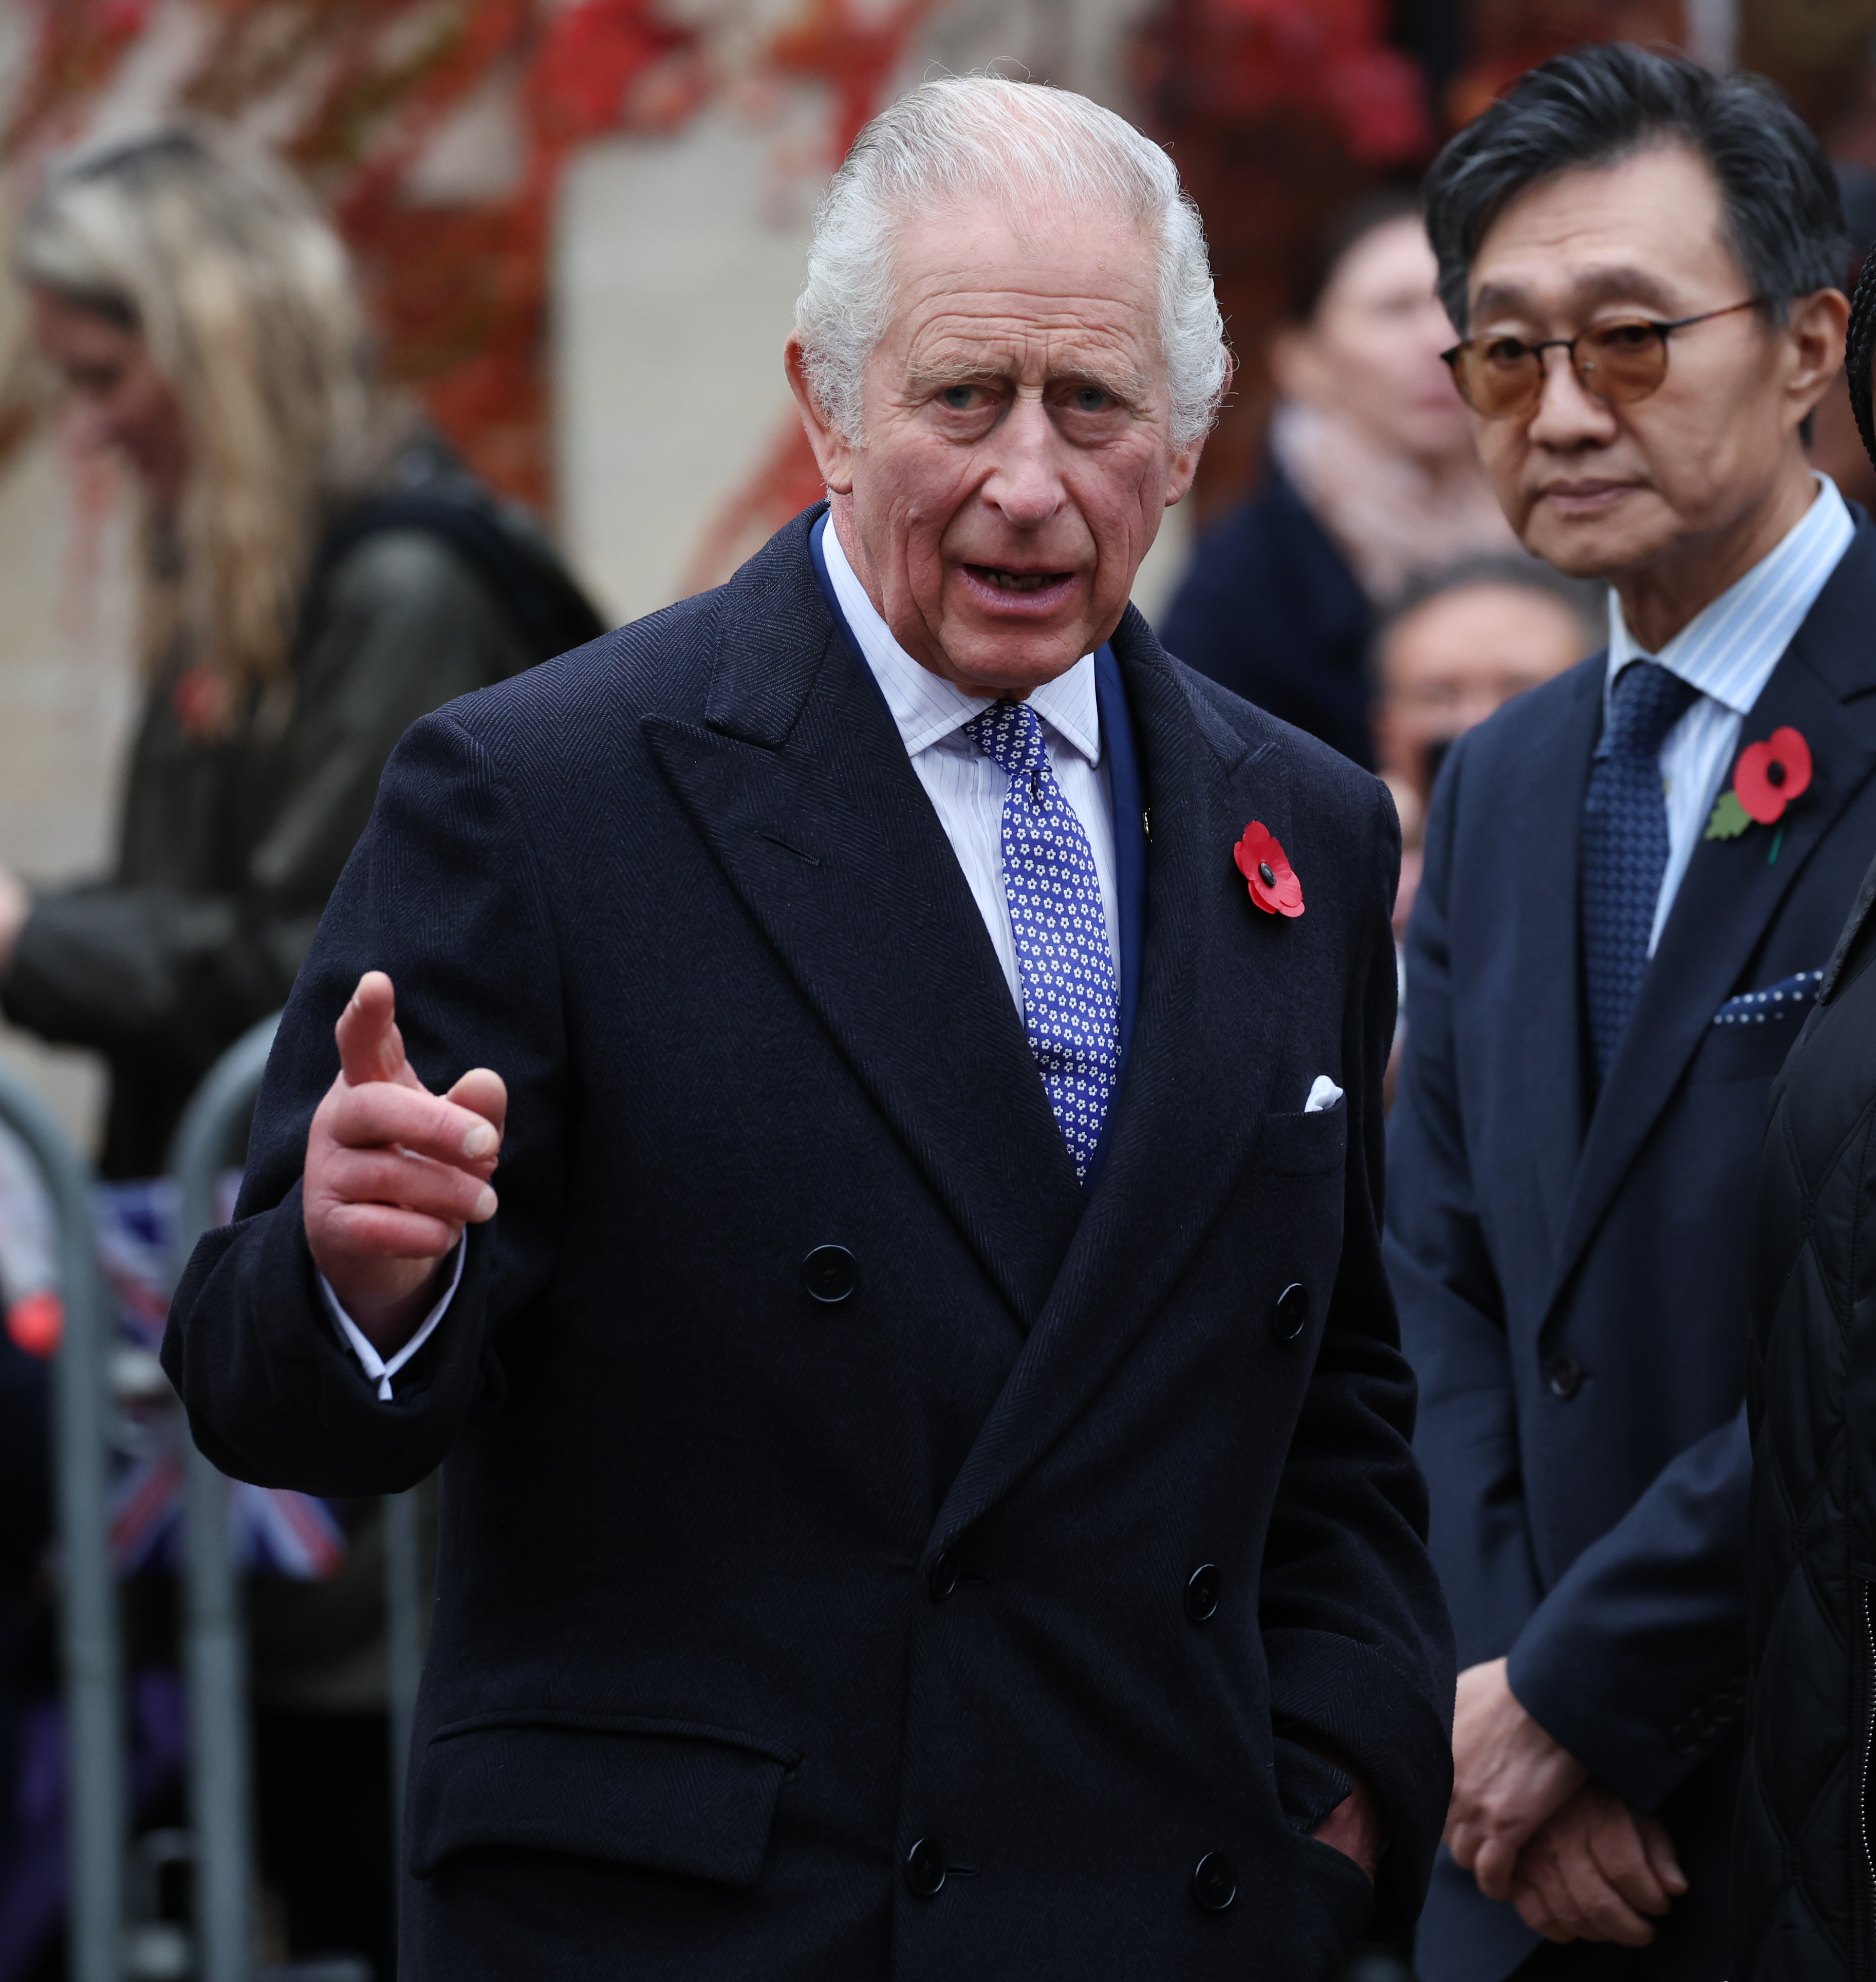 König Charles nutzt Stallmeister, um in militärischen Angelegenheiten und bei Treffen mit Würdenträgern zu helfen